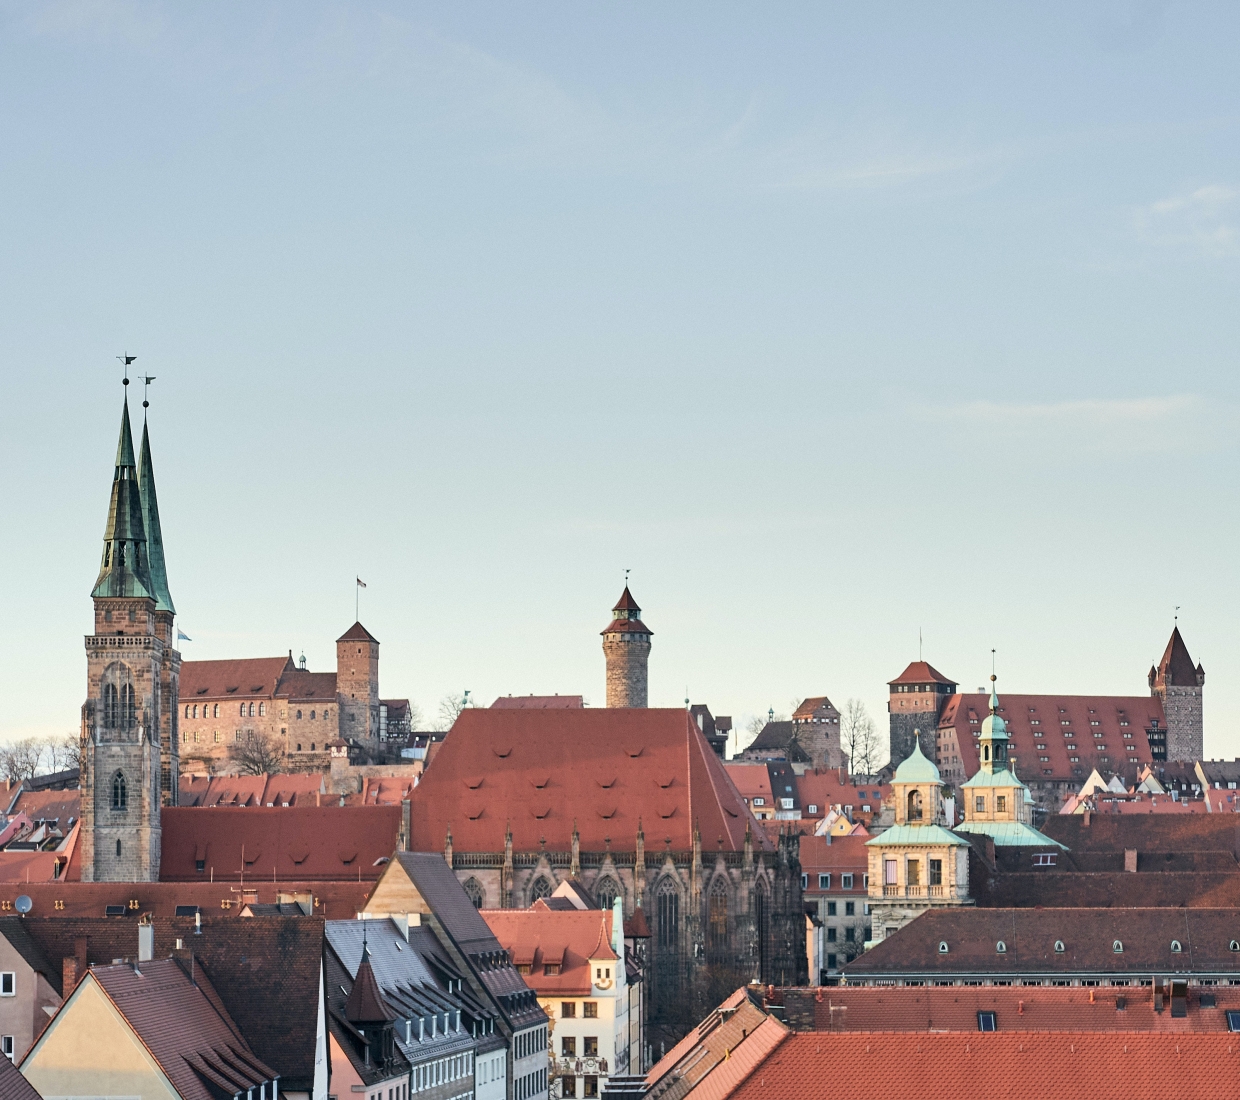 Hoteles con encanto en Nuremberg, hoteles de lujo y apartamentos con estilo Nuremberg